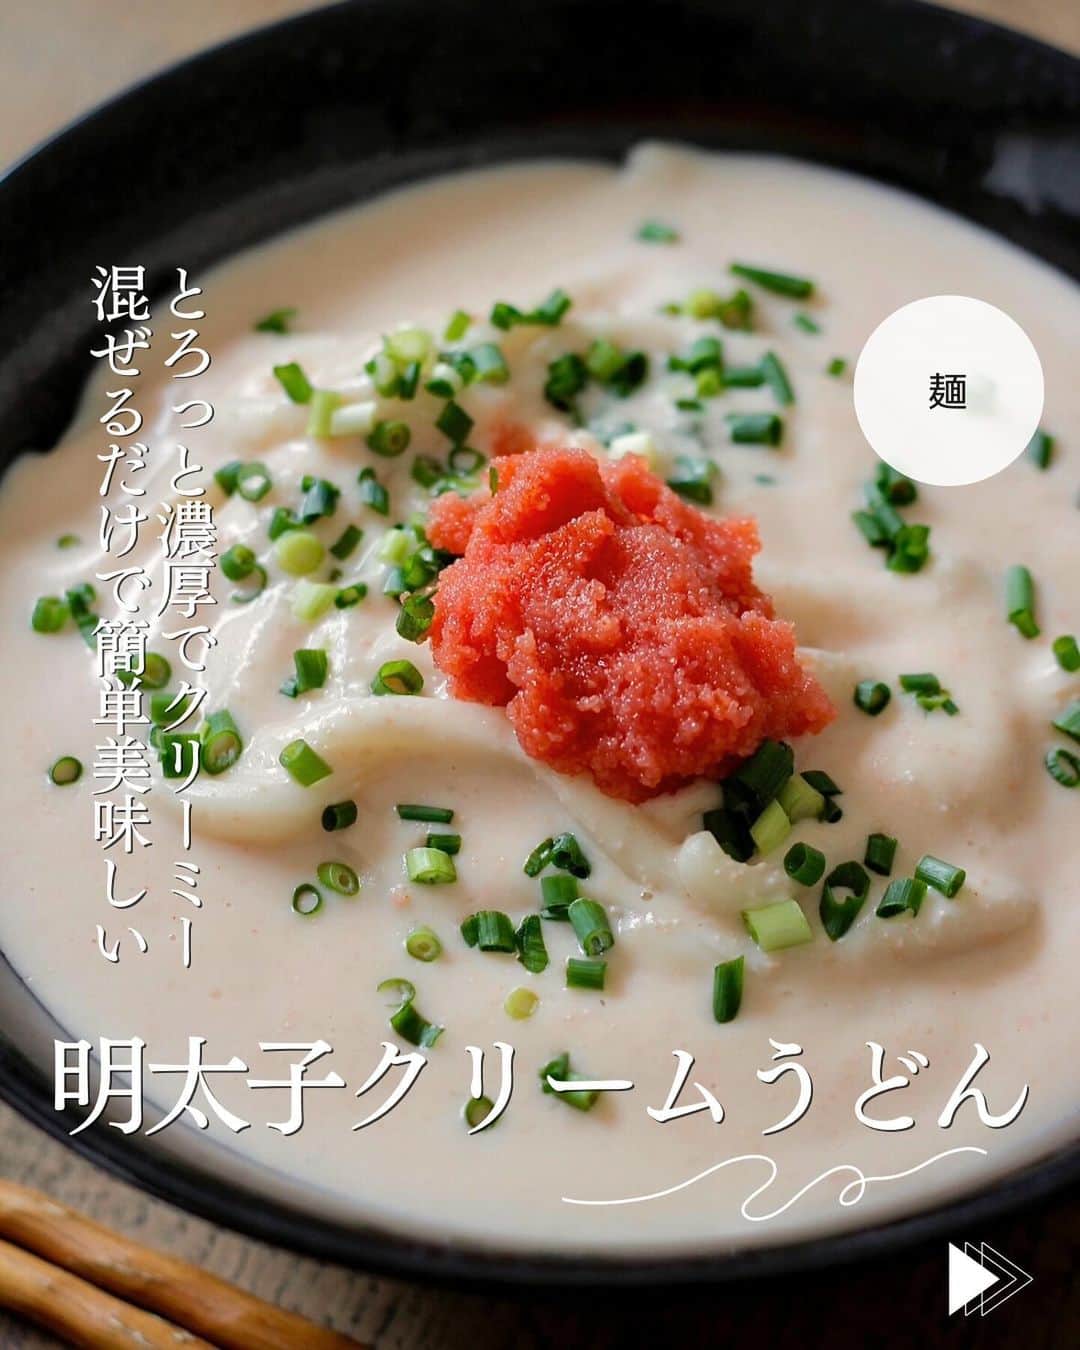 かみじともこのインスタグラム：「☆#明太子クリームうどん ☆  @eiyoushino_recipe  🆔cookpadレシピID:4828512  今日のおすすめは 「明太子クリームうどん」👩🏻‍🍳です とろっと濃厚な明太子クリームスープは 鍋に材料を入れて温めながらぐるぐる混ぜるだけで完成！失敗知らずの簡単スープ♪ 明太子クリームうどんが大好きなので 家で簡単に美味しく作れるように考えたレシピです。 ランチにおすすめ、 みなさん美味しくできますように☺️  ＿＿＿＿＿＿＿＿＿＿＿＿＿＿＿＿＿＿＿＿＿＿＿  💬💬💬 最後の動画は  【いくら500g】を購入したのでいくら丼に♪ 冷凍で届くいくらを冷蔵庫に一晩いれて解凍。 美味しいいくら丼が食べられました。 年末年始のご馳走様におすすめのいくらです。 ハイライト、ストーリーズに載せます。  ＿＿＿＿＿＿＿＿＿＿＿＿＿＿＿＿＿＿＿＿  cookpadに毎日たくさんのつくれぽを ありがとうございます！ みなさんから届いた大切なつくれぽは 私の大切な宝物です🤍 つくれぽ送ってくれるみなさん大好きです😍  ＿＿＿＿＿＿＿＿＿＿＿＿＿＿＿＿＿＿＿＿＿  🍳作られたお料理はぜひ🍳 【 #栄養士のれしぴ 】 【 #栄養士のれしぴのレシピ 】 を付けてくださいね✨ (れしぴはひらがなです✍️) ストーリーズで ご紹介させていただく事があります♪  ＿＿＿＿＿＿＿＿＿＿＿＿＿＿＿＿＿＿＿＿＿＿  お知らせ❶  YouTubeはじめました ストーリーズ、ハイライトのリンクからどうぞ ▶︎▶︎▶︎ @eiyoushino_recipe  最近の動画では 【まるごと冷凍弁当ベスト6】 【絶品！ねぎ塩だれ5選】 を紹介しています。 ＿＿＿＿＿＿＿＿＿＿＿＿＿＿＿＿＿＿＿＿＿＿  お知らせ❷  楽天ROOMに 愛用のキッチン用品や、便利な道具 美味しかった物や、食器など載せてます♪ ＿＿＿＿＿＿＿＿＿＿＿＿＿＿＿＿＿＿＿＿＿＿  お知らせ❸  新刊【☆栄養士のれしぴ☆黄金だれ】 宝島社より好評販売中！ ＿＿＿＿＿＿＿＿＿＿＿＿＿＿＿＿＿＿＿＿＿＿＿  #栄養士のれしぴ #栄養士のれしぴのレシピ  #明太子 #クリームうどん #PR #うどん #うどんレシピ #簡単料理　 #基本の料理　 #基本のレシピ　 #家庭料理　 #定番料理 #おうちごはん #レシピ #簡単レシピ #暮らしを楽しむ #クックパッド　 #cookpad #recipe #cooking #料理 #器 #30代　#40代  #50代　#60代 #youtubeはじめました #楽天room #楽天roomに載せてます」